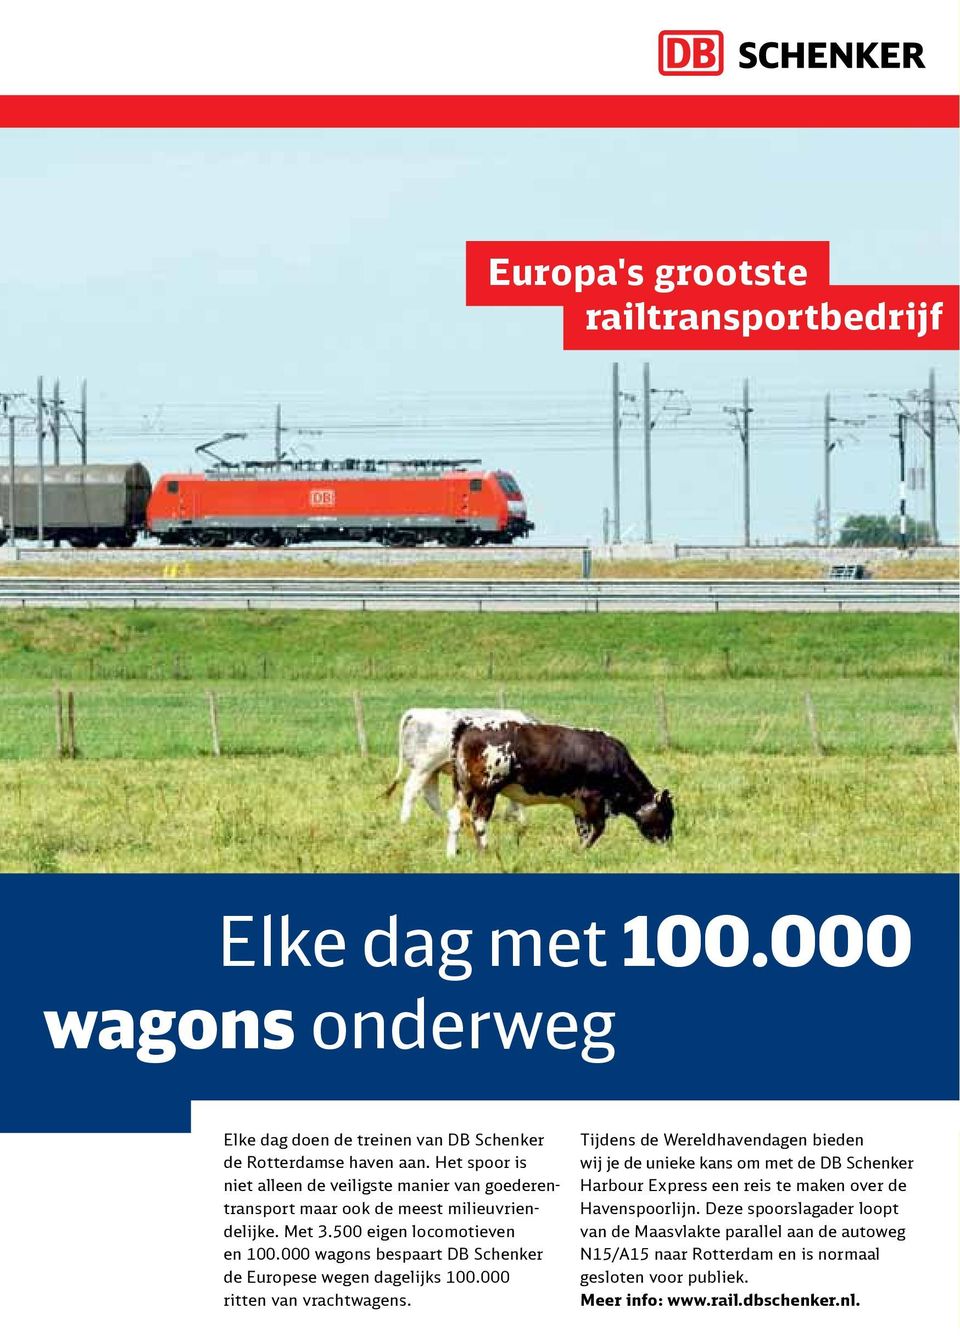 000 wagons bespaart DB Schenker de Europese wegen dagelijks 100.000 ritten van vrachtwagens.